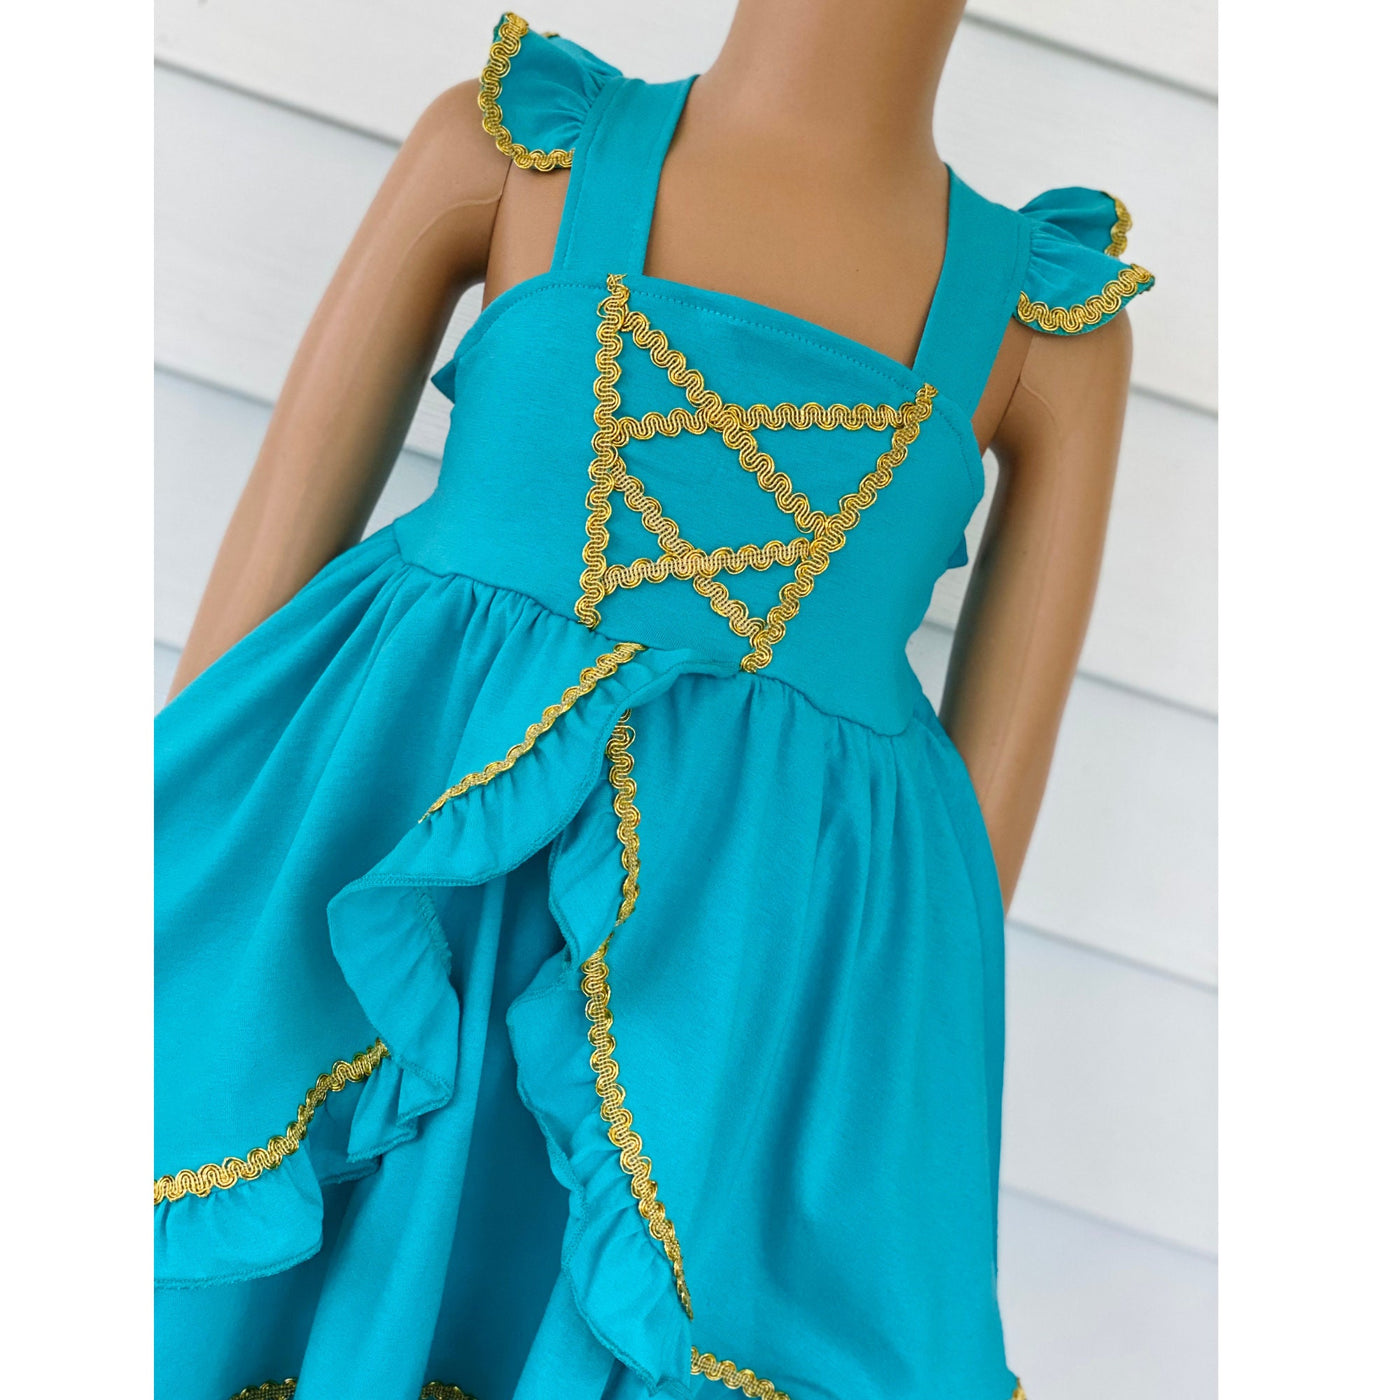 Jasmine princess dress